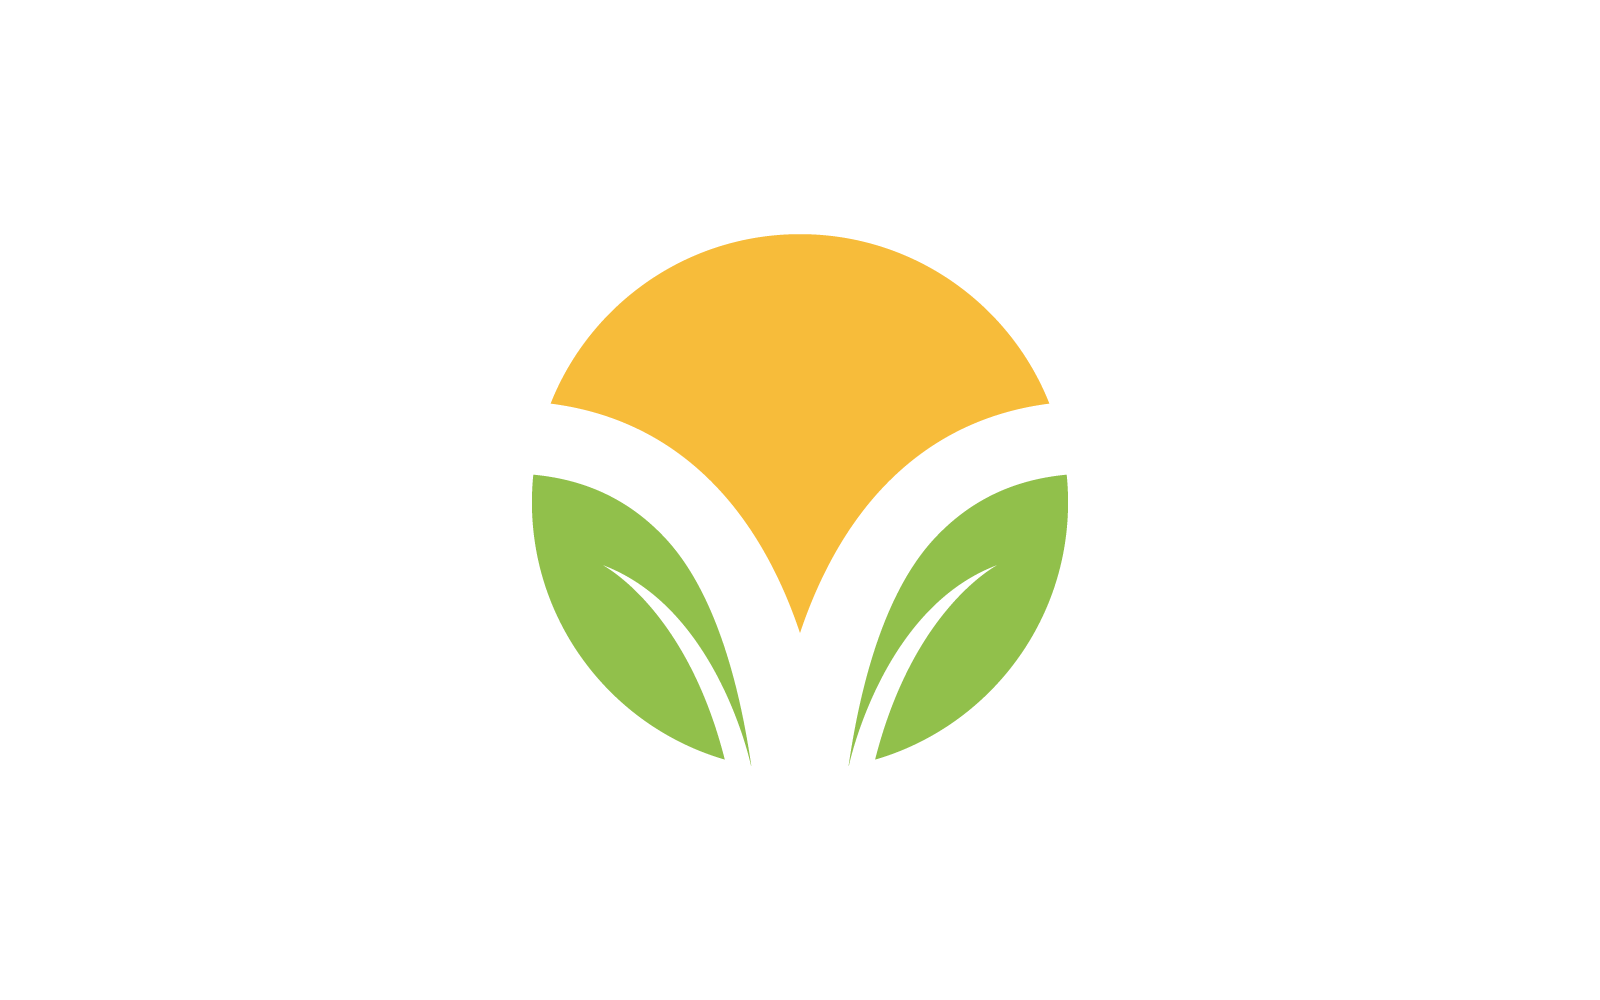 Green leaf illustration nature logo vector Logo Template